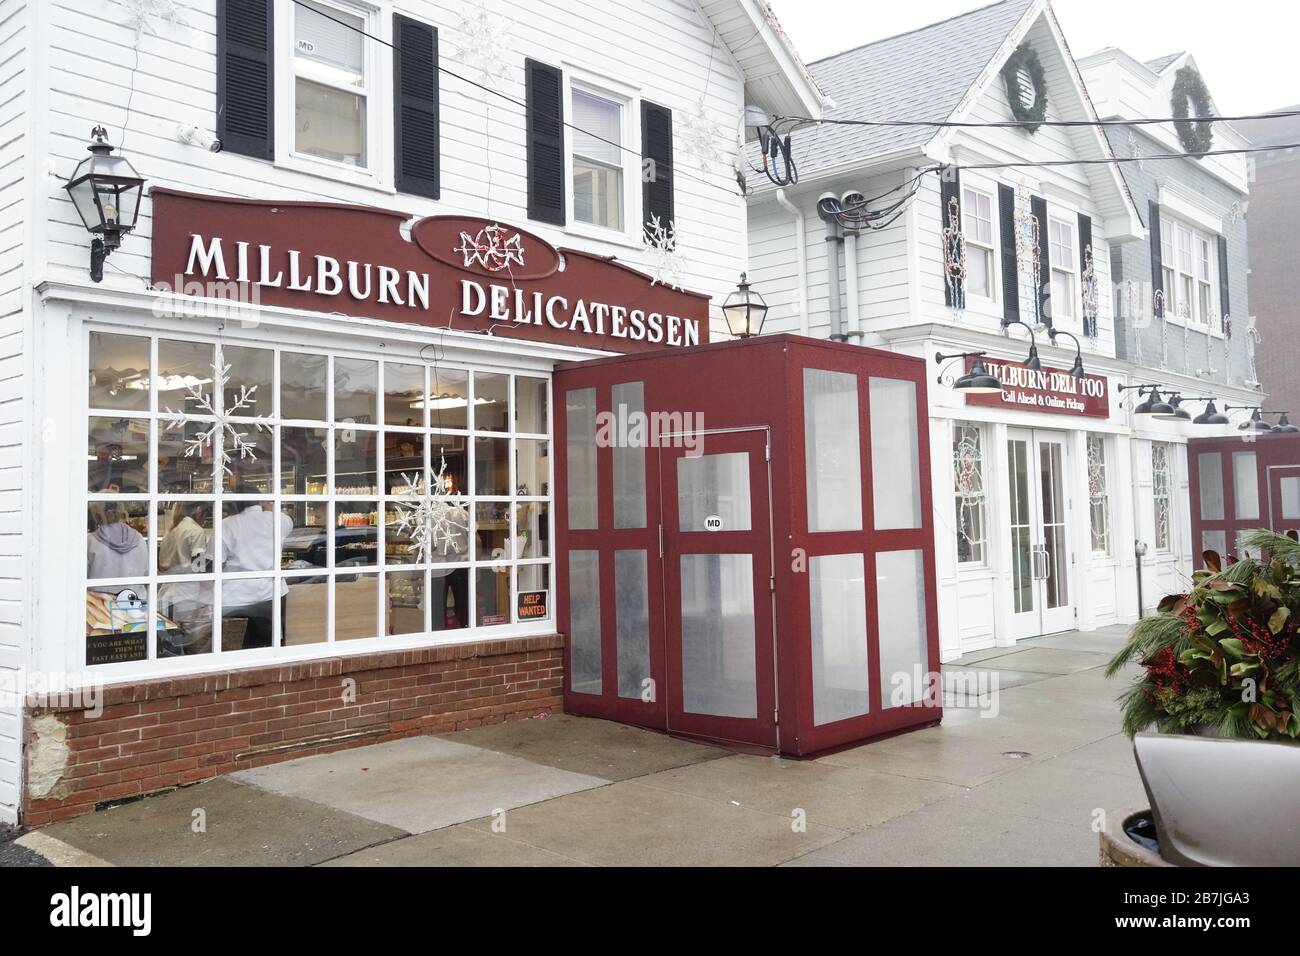 Millburn Delicatessen 328 Millburn Avenue, Millburn, NJ 07041  Local favorite, open since 1946. Best Deli sandwich in the Garden State. Stock Photo